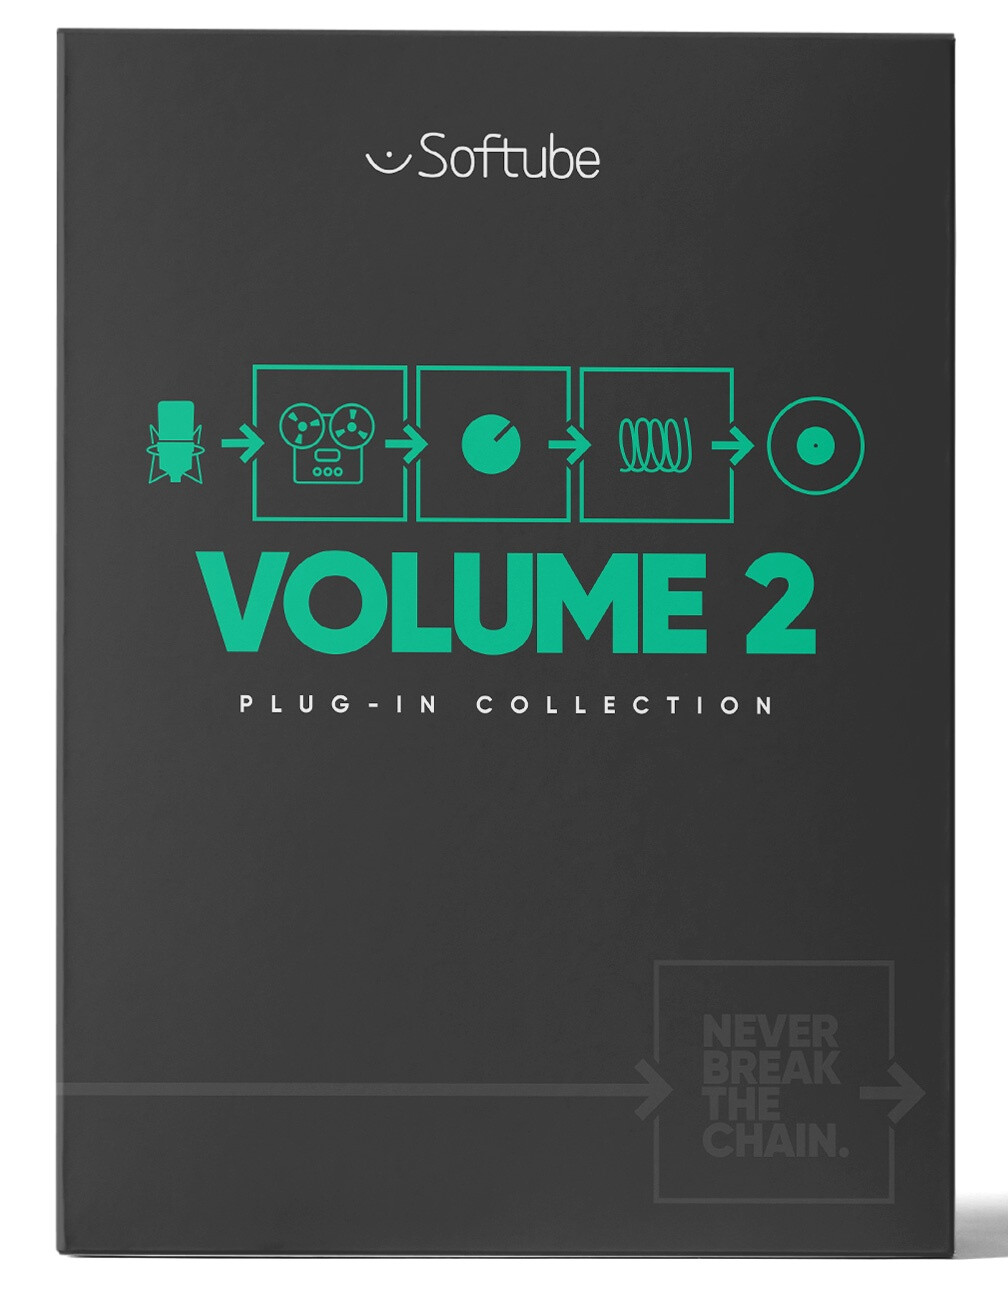 Le Softube Volume 2 en location sur Gobbler